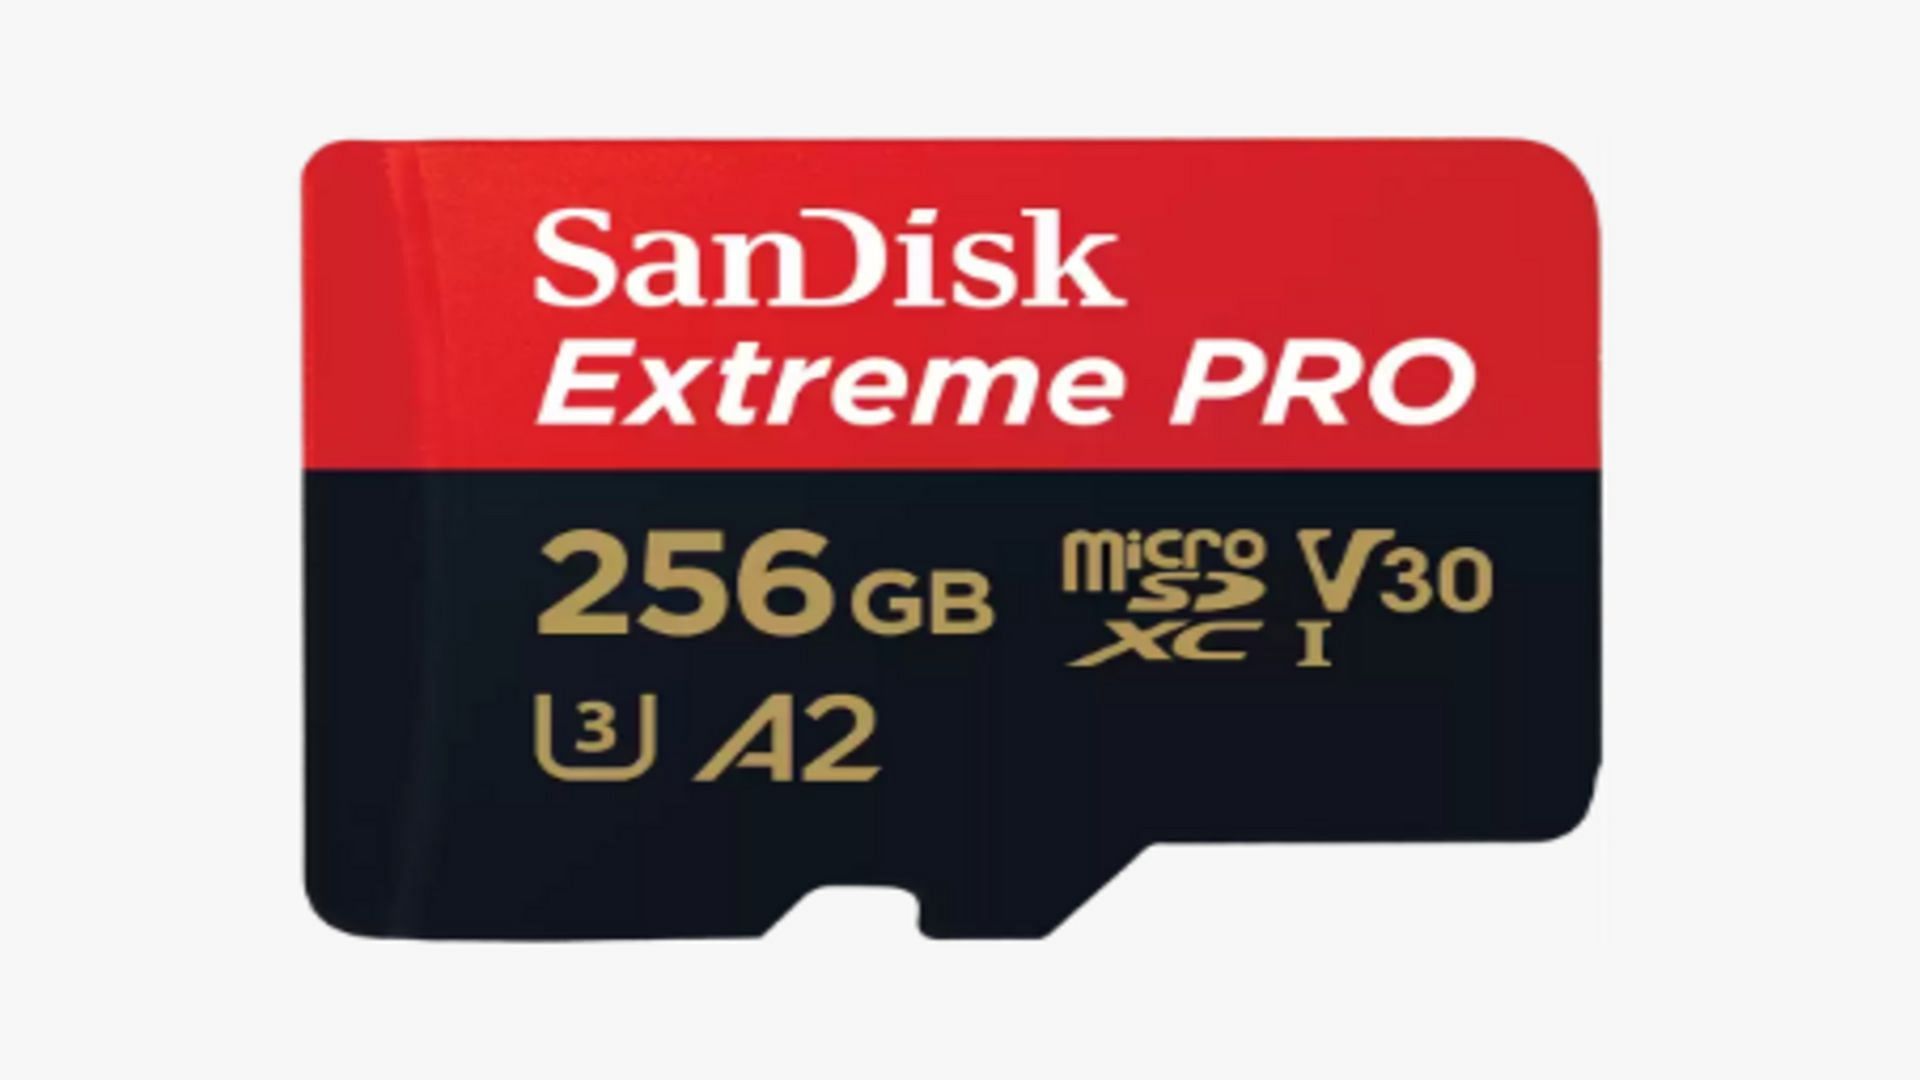 SanDisk Extreme PRO 256 GB mic͏roSD͏ UHS-I (Image via Sandisk)